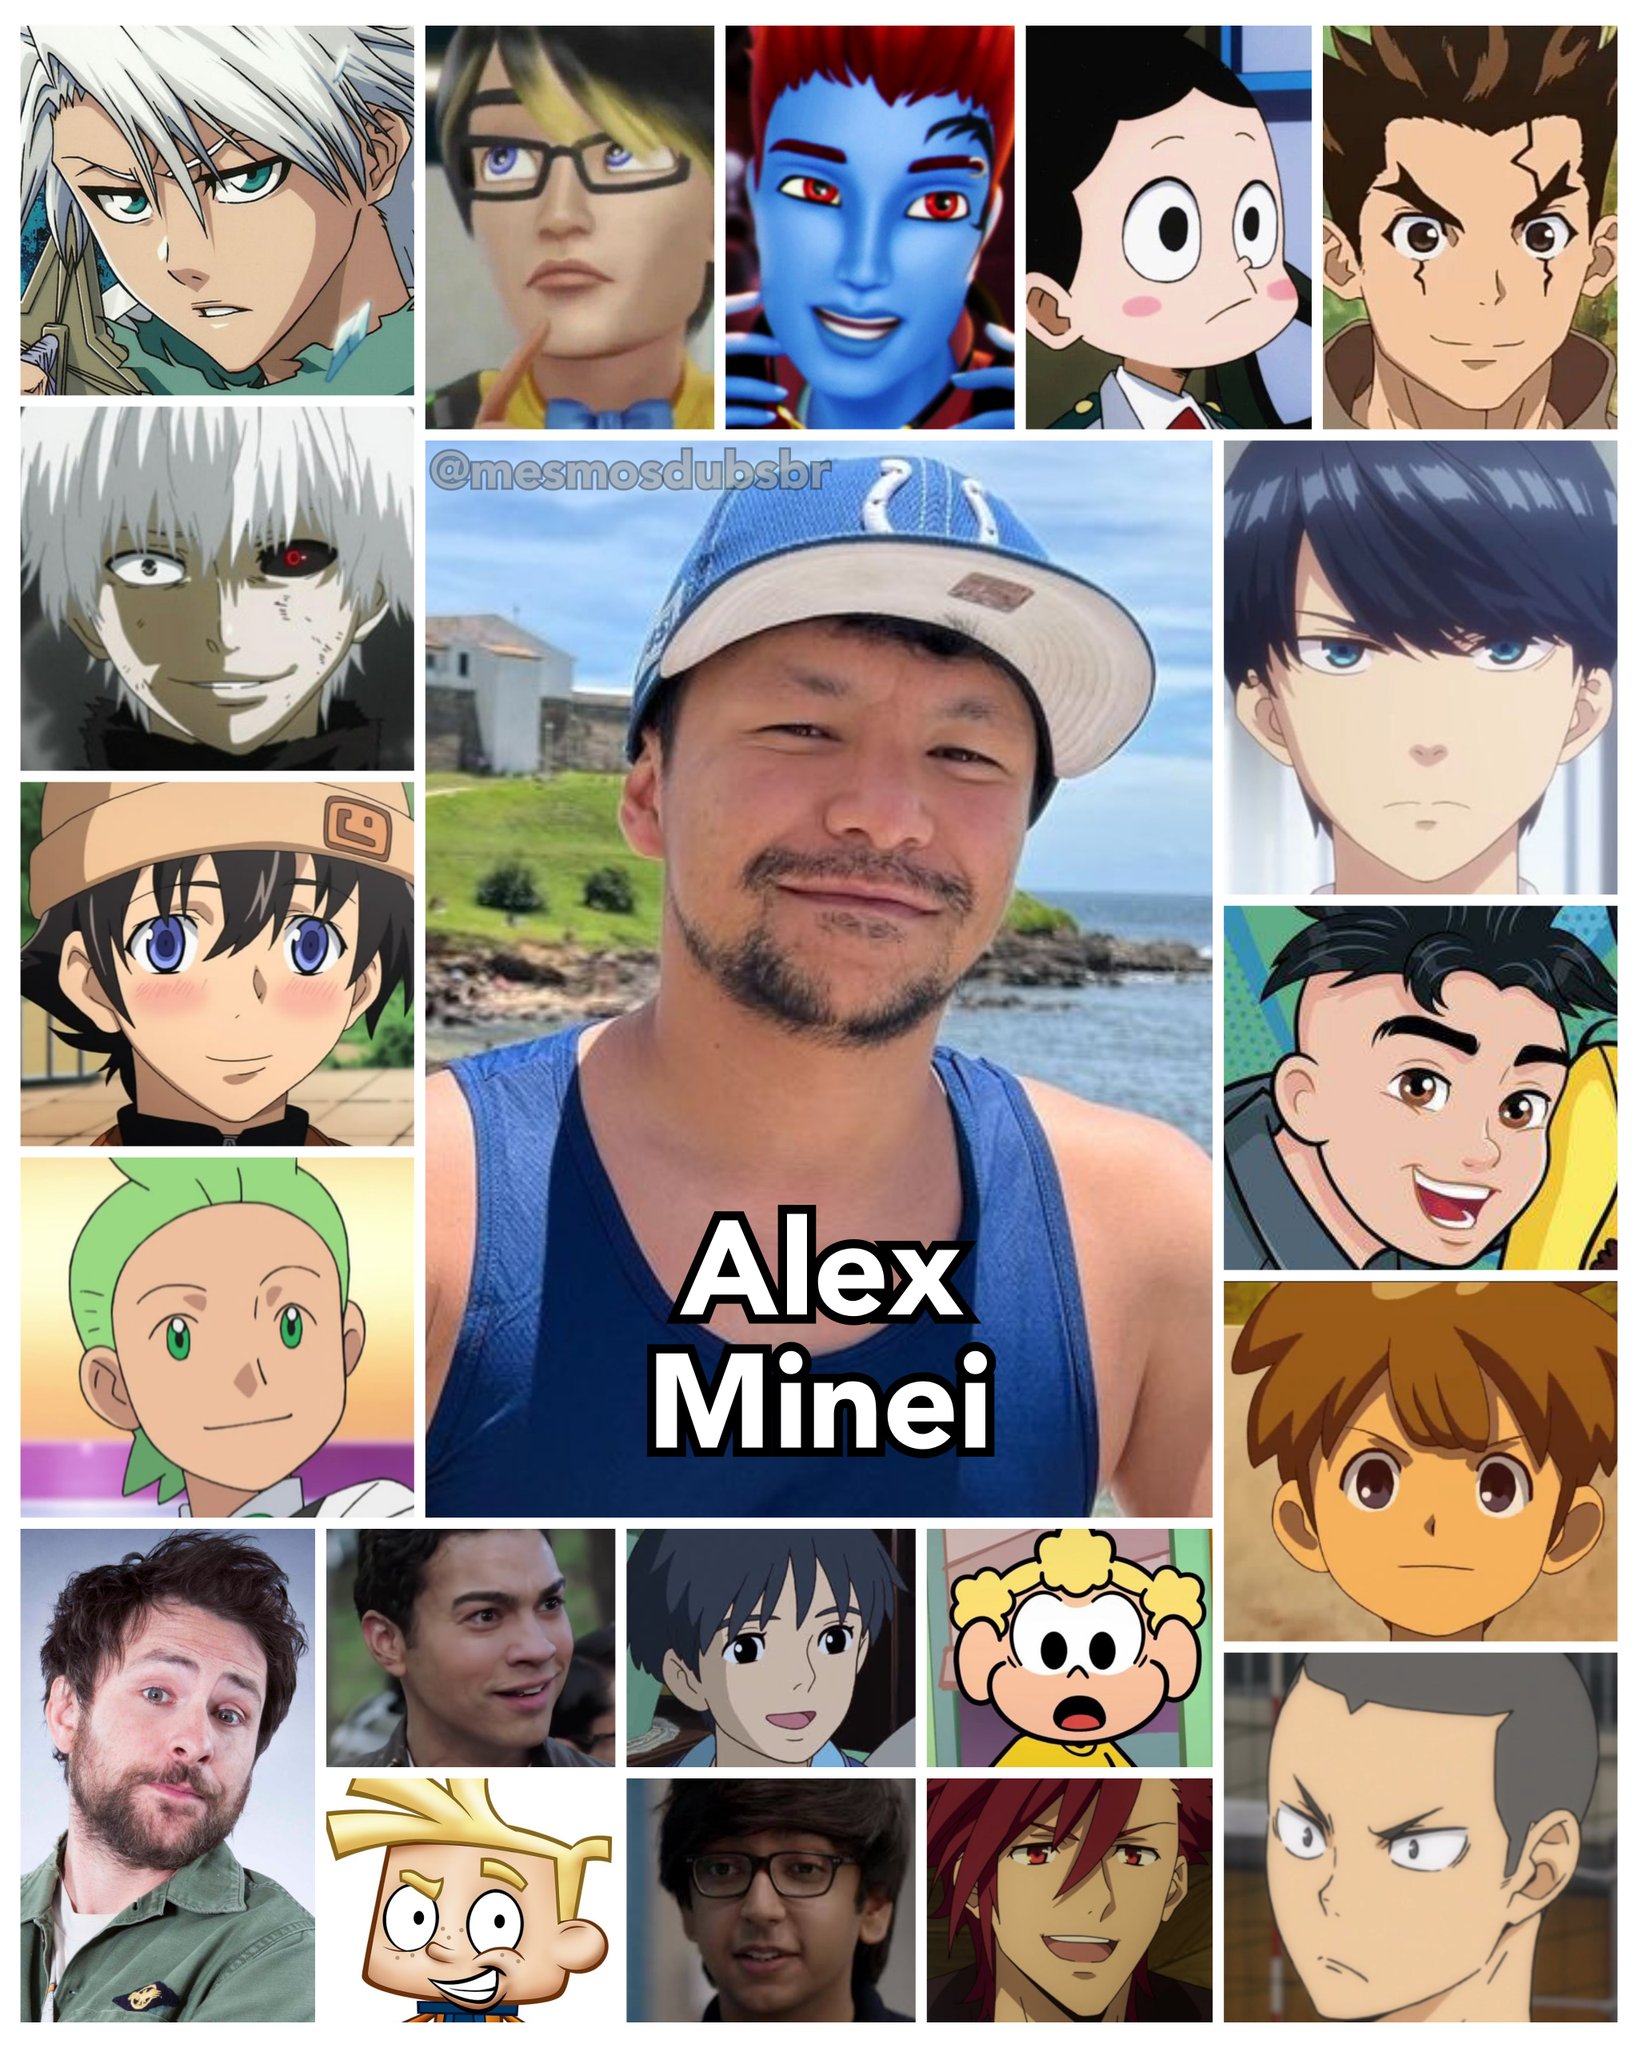 Funimation - Ele é o Alex Minei, a voz do Ken Kaneki de Tokyo